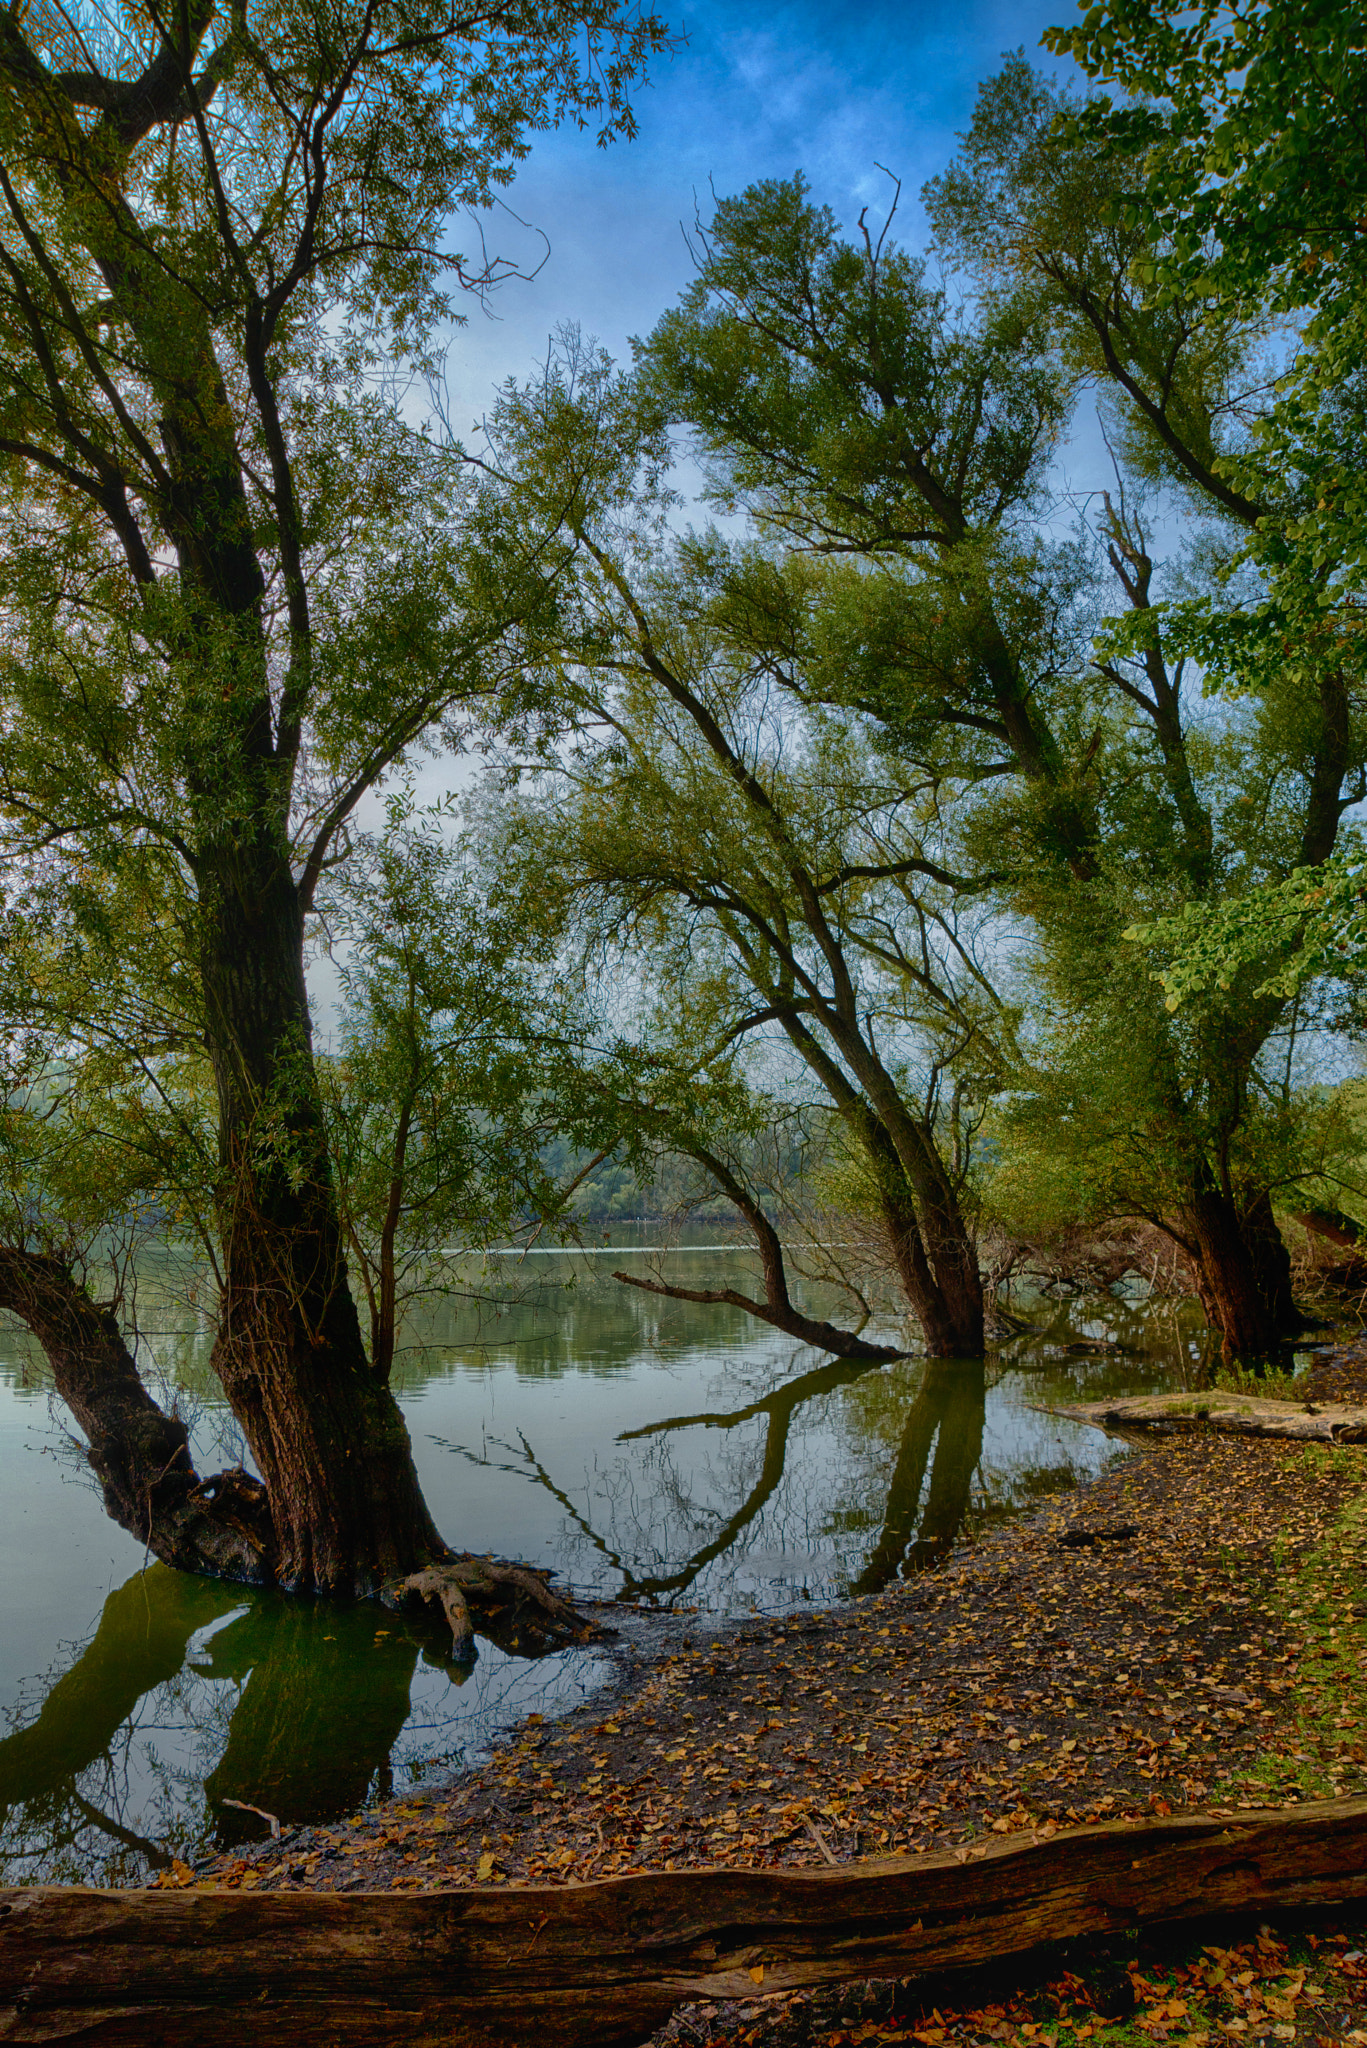 Nikon D800 + AF Zoom-Nikkor 24-120mm f/3.5-5.6D IF sample photo. River rhine forest photography